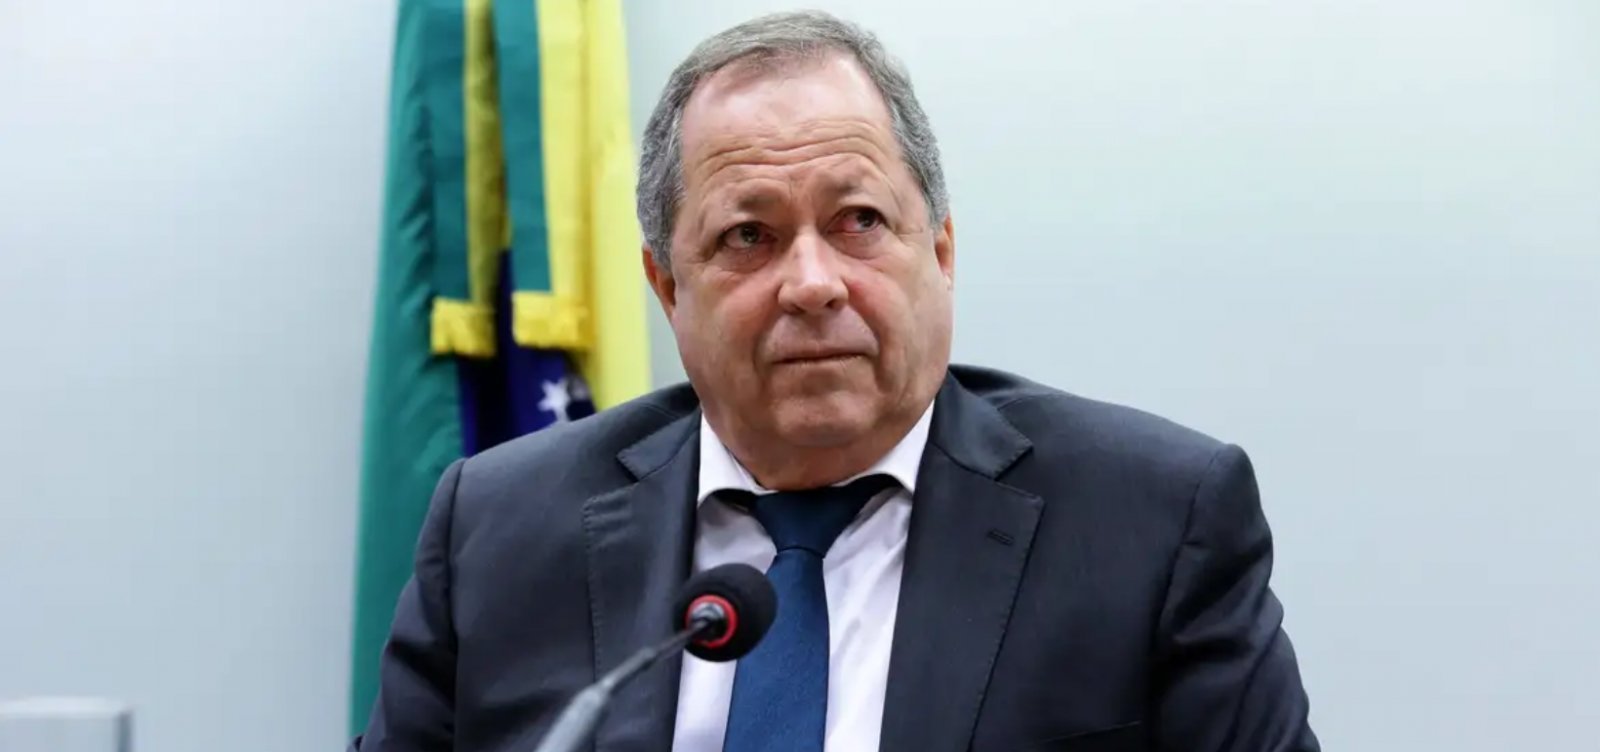 Brazão pede à Câmara saída da relatora de processo no Conselho de Ética alegando "imparcialidade"